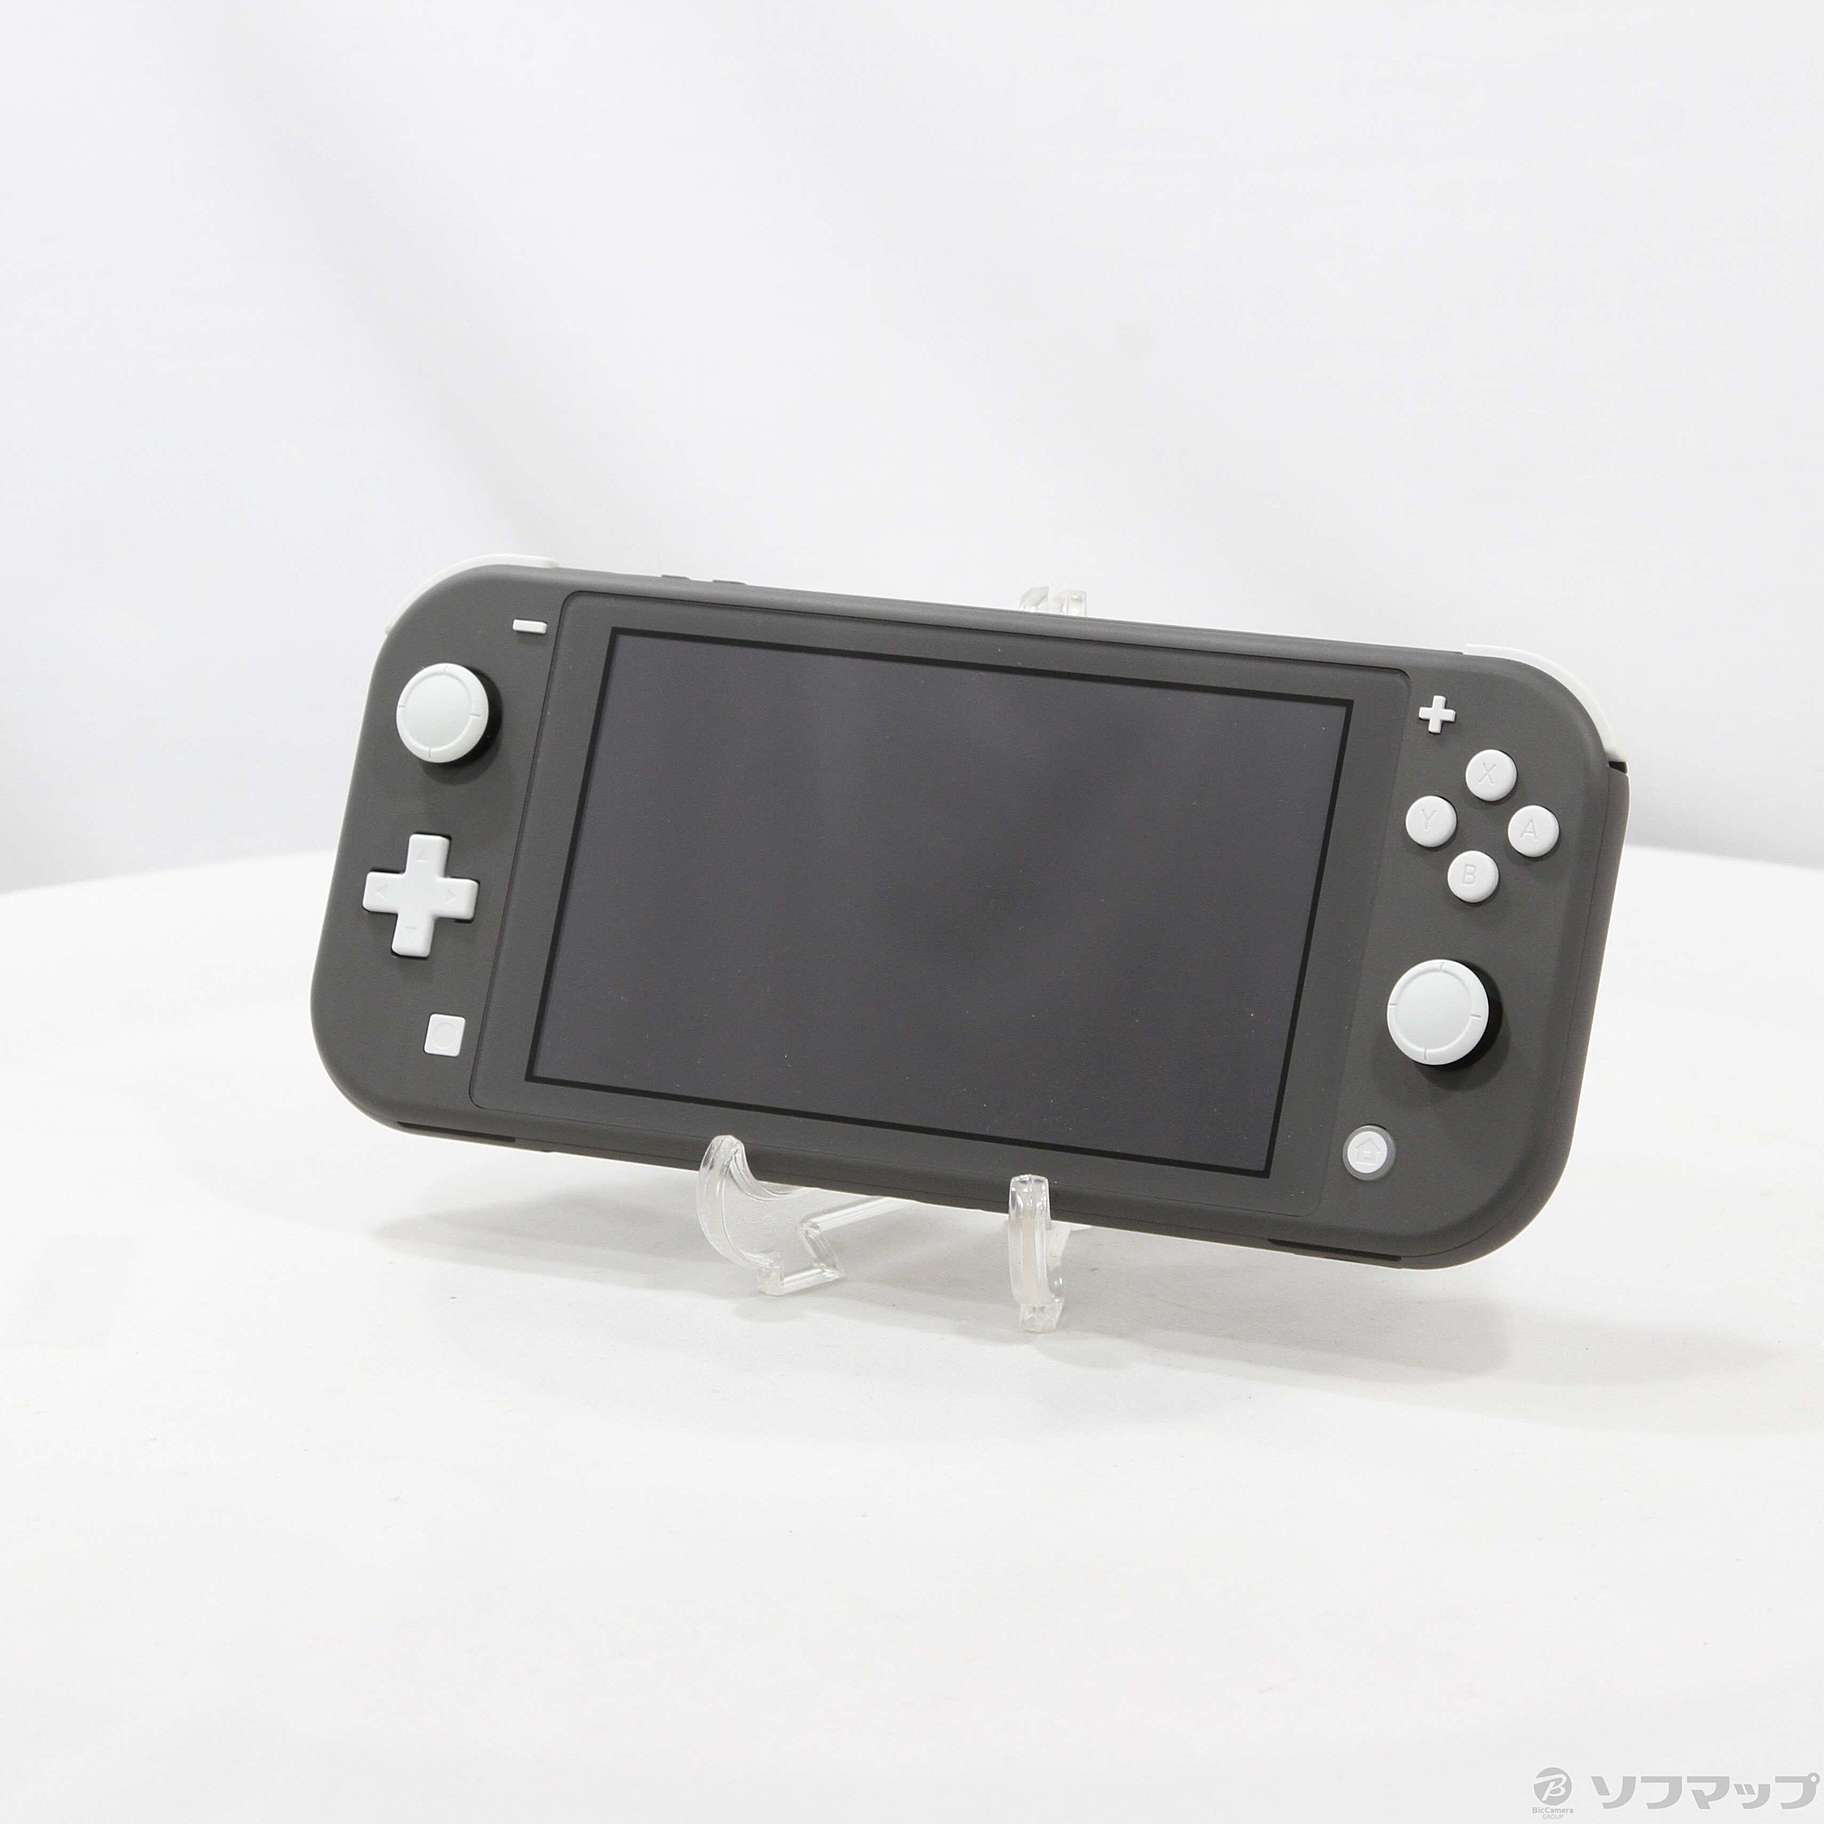 〔中古品〕 Nintendo Switch Lite グレー